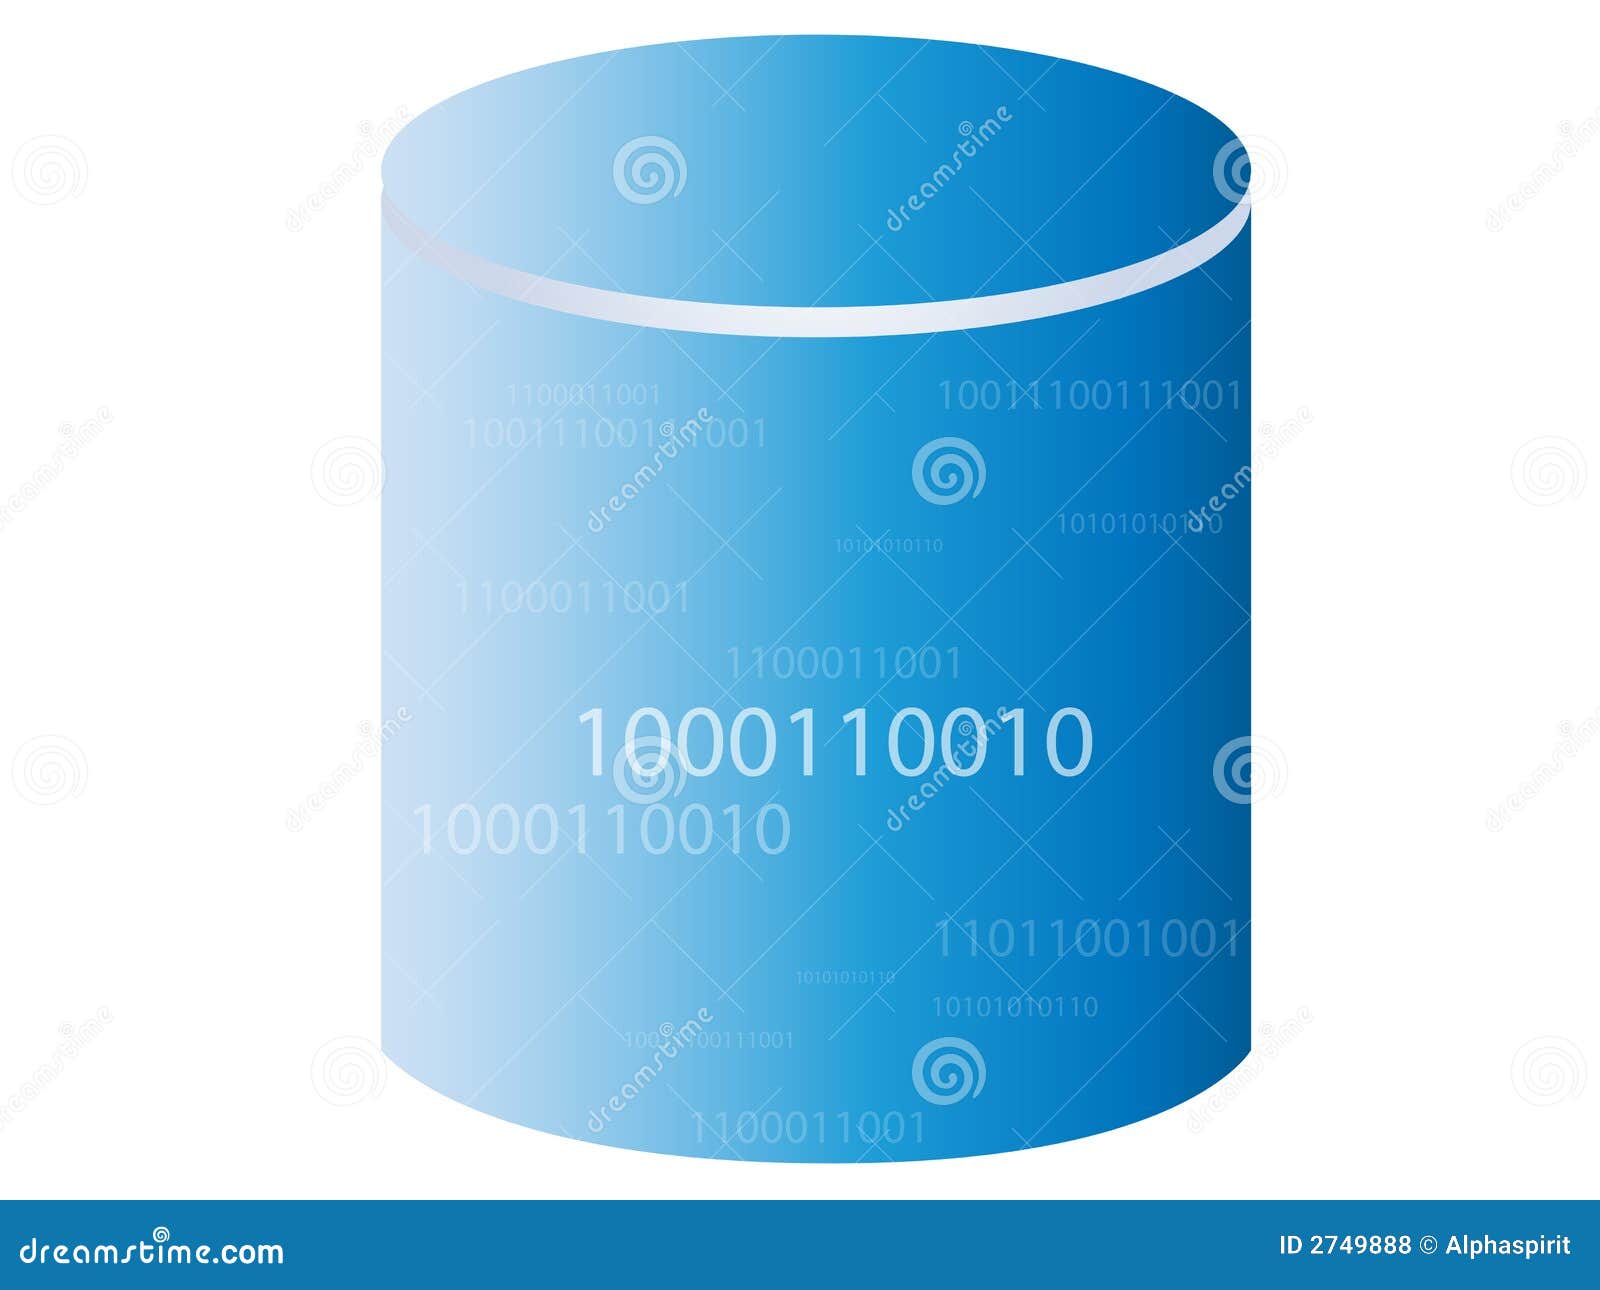 database / storage